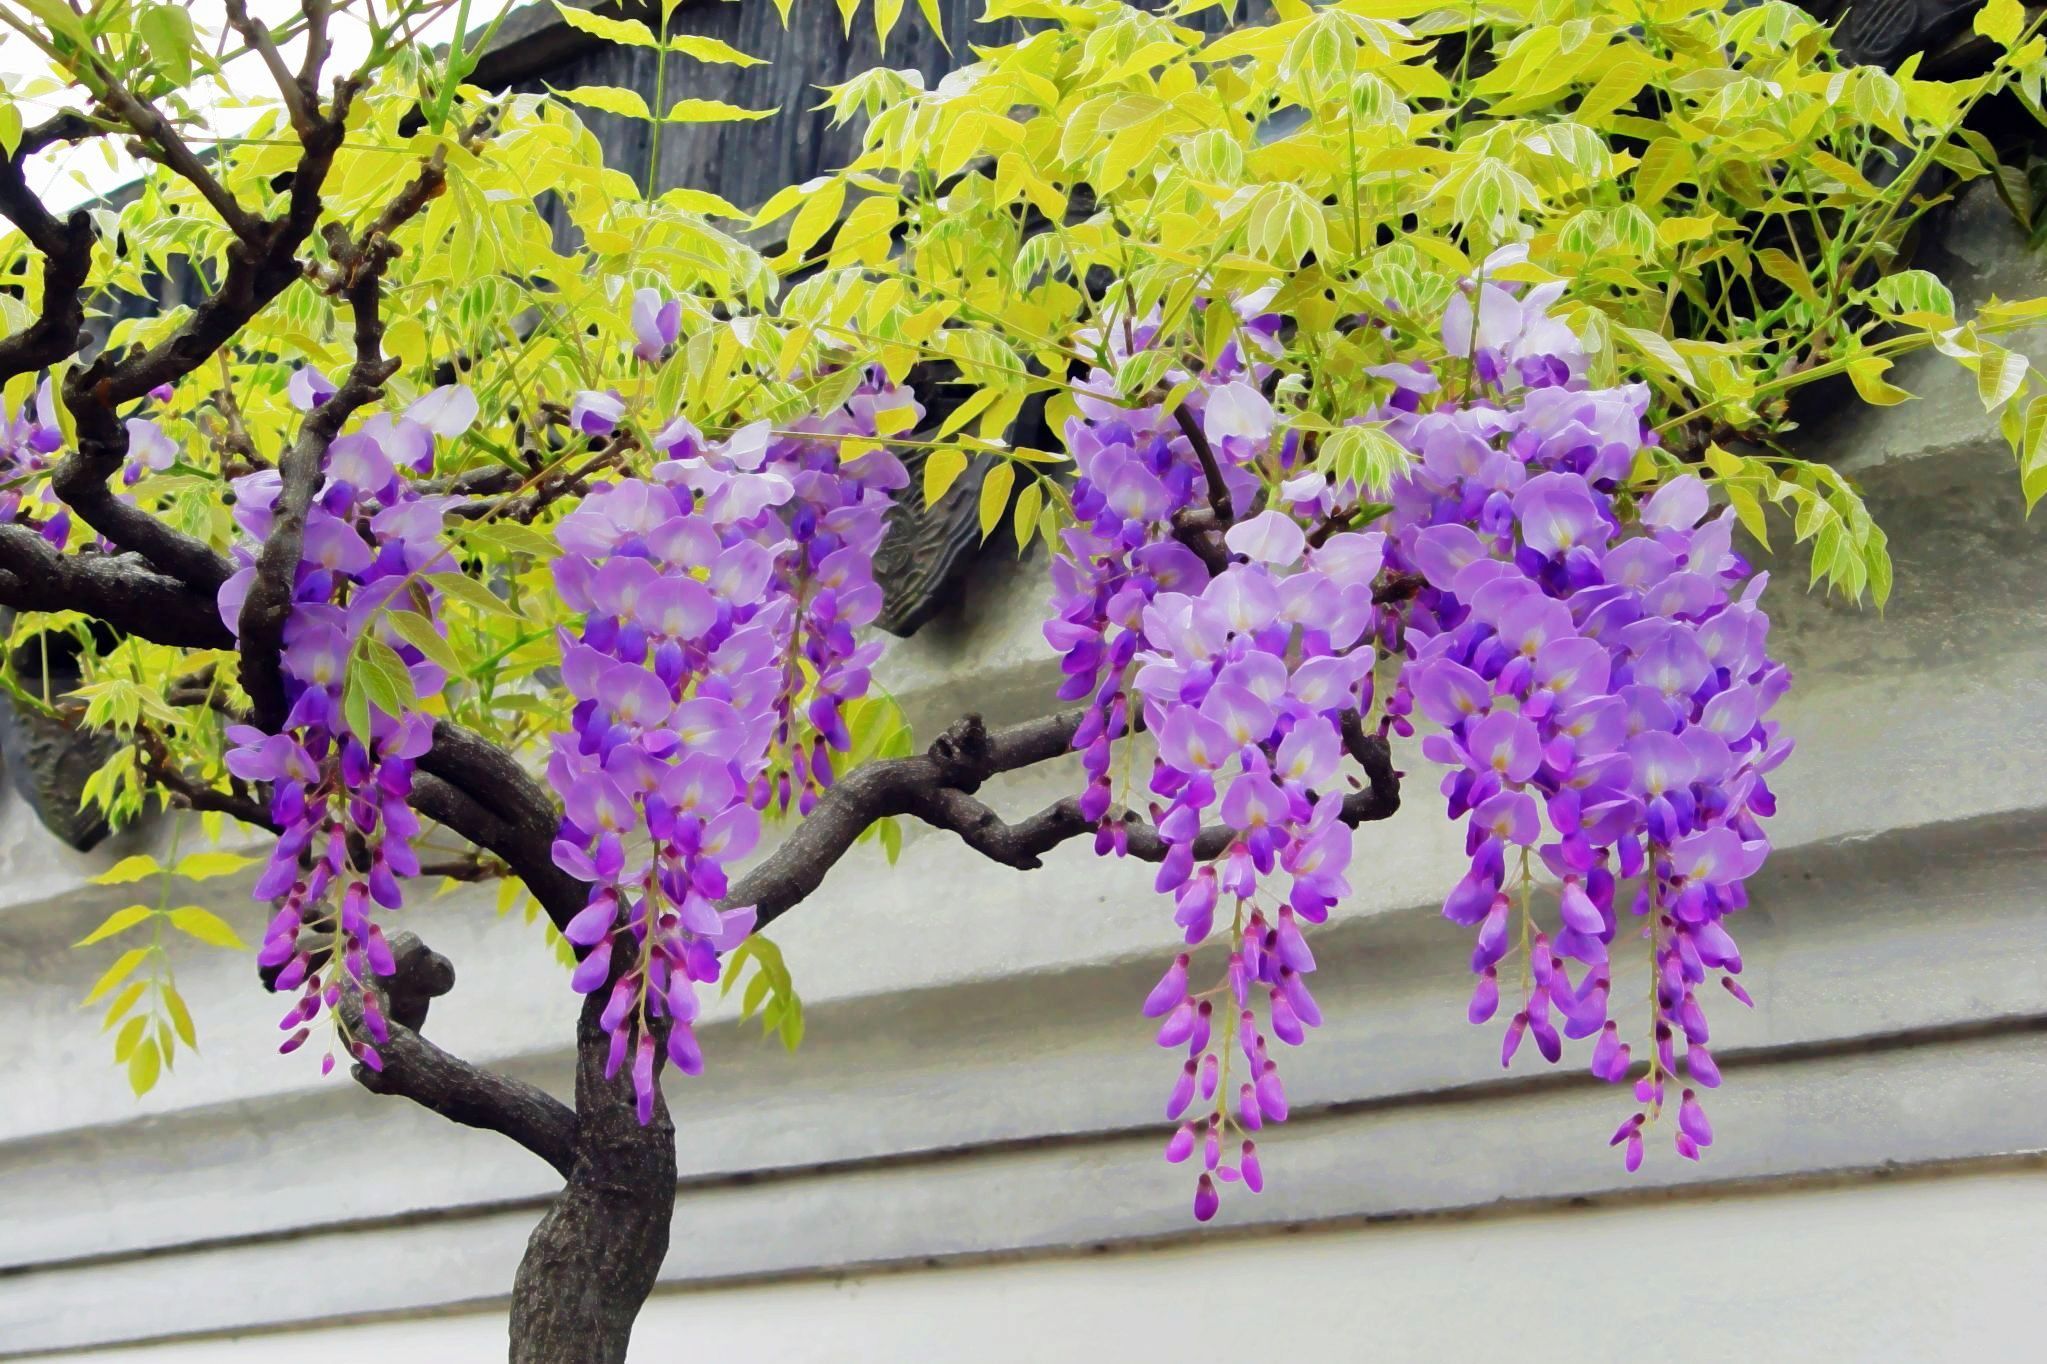 紫藤图片_植物根茎的紫藤图片大全 - 花卉网